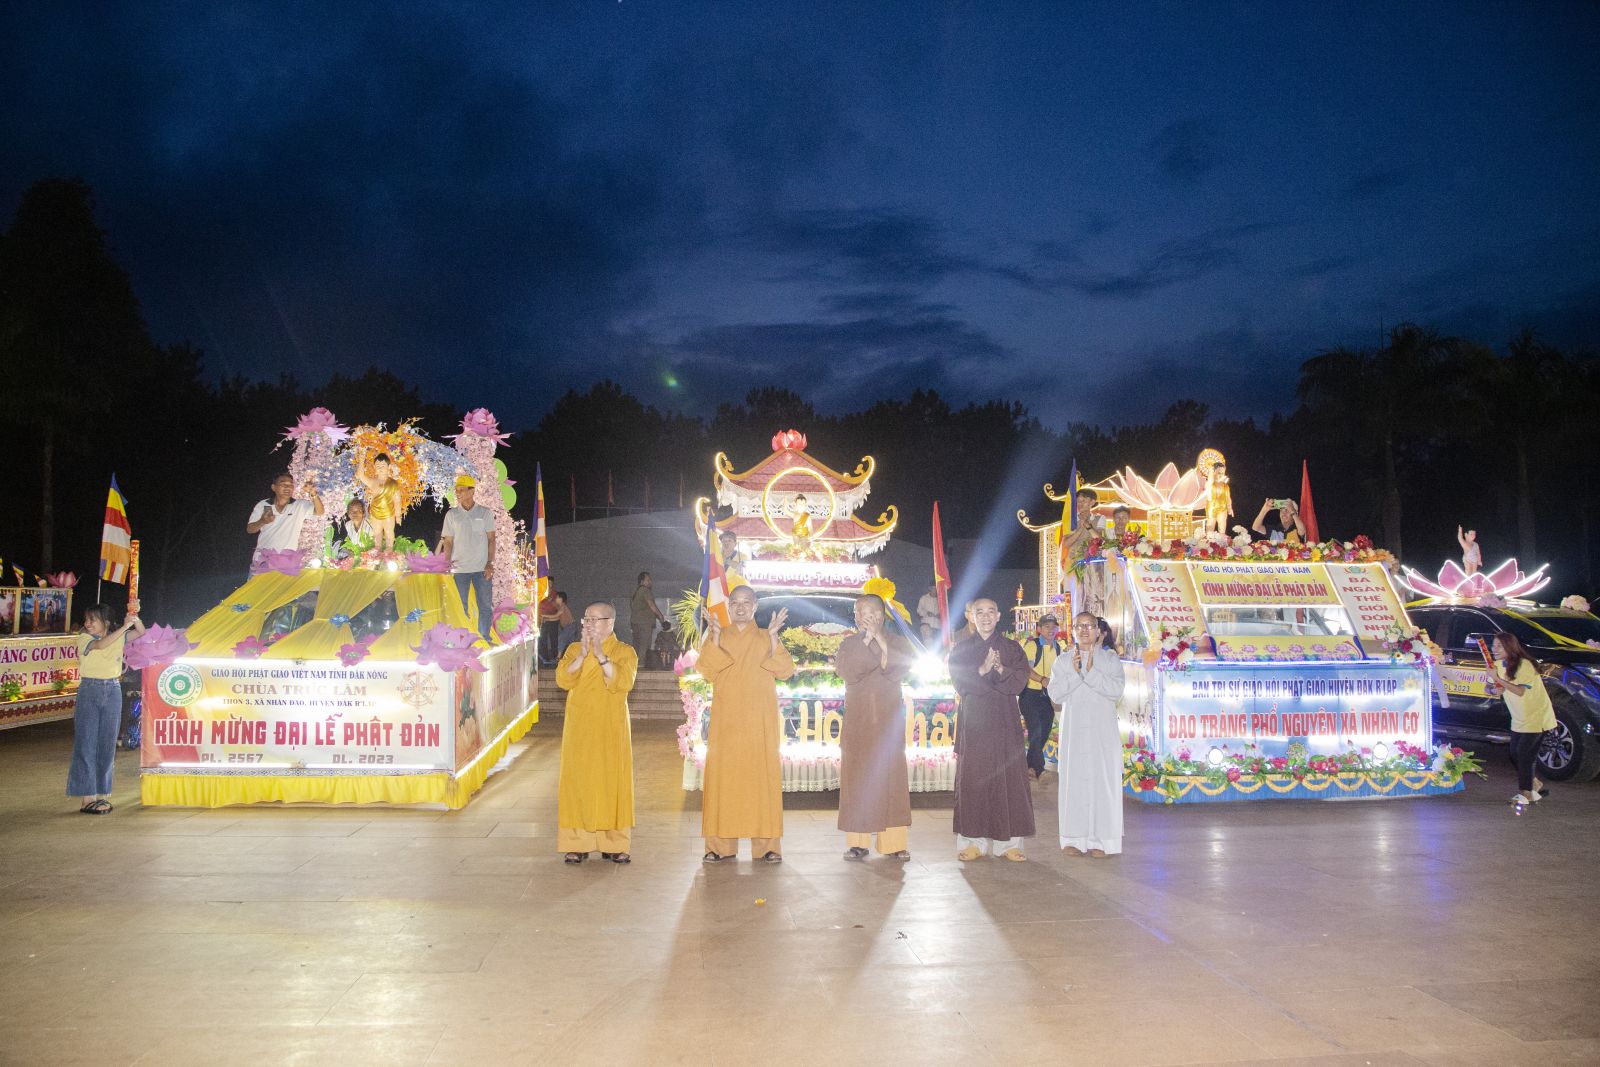 Phật giáo huyện Đăk R'lấp diễu hành xe hoa kính mừng Phật đản PL. 2567.